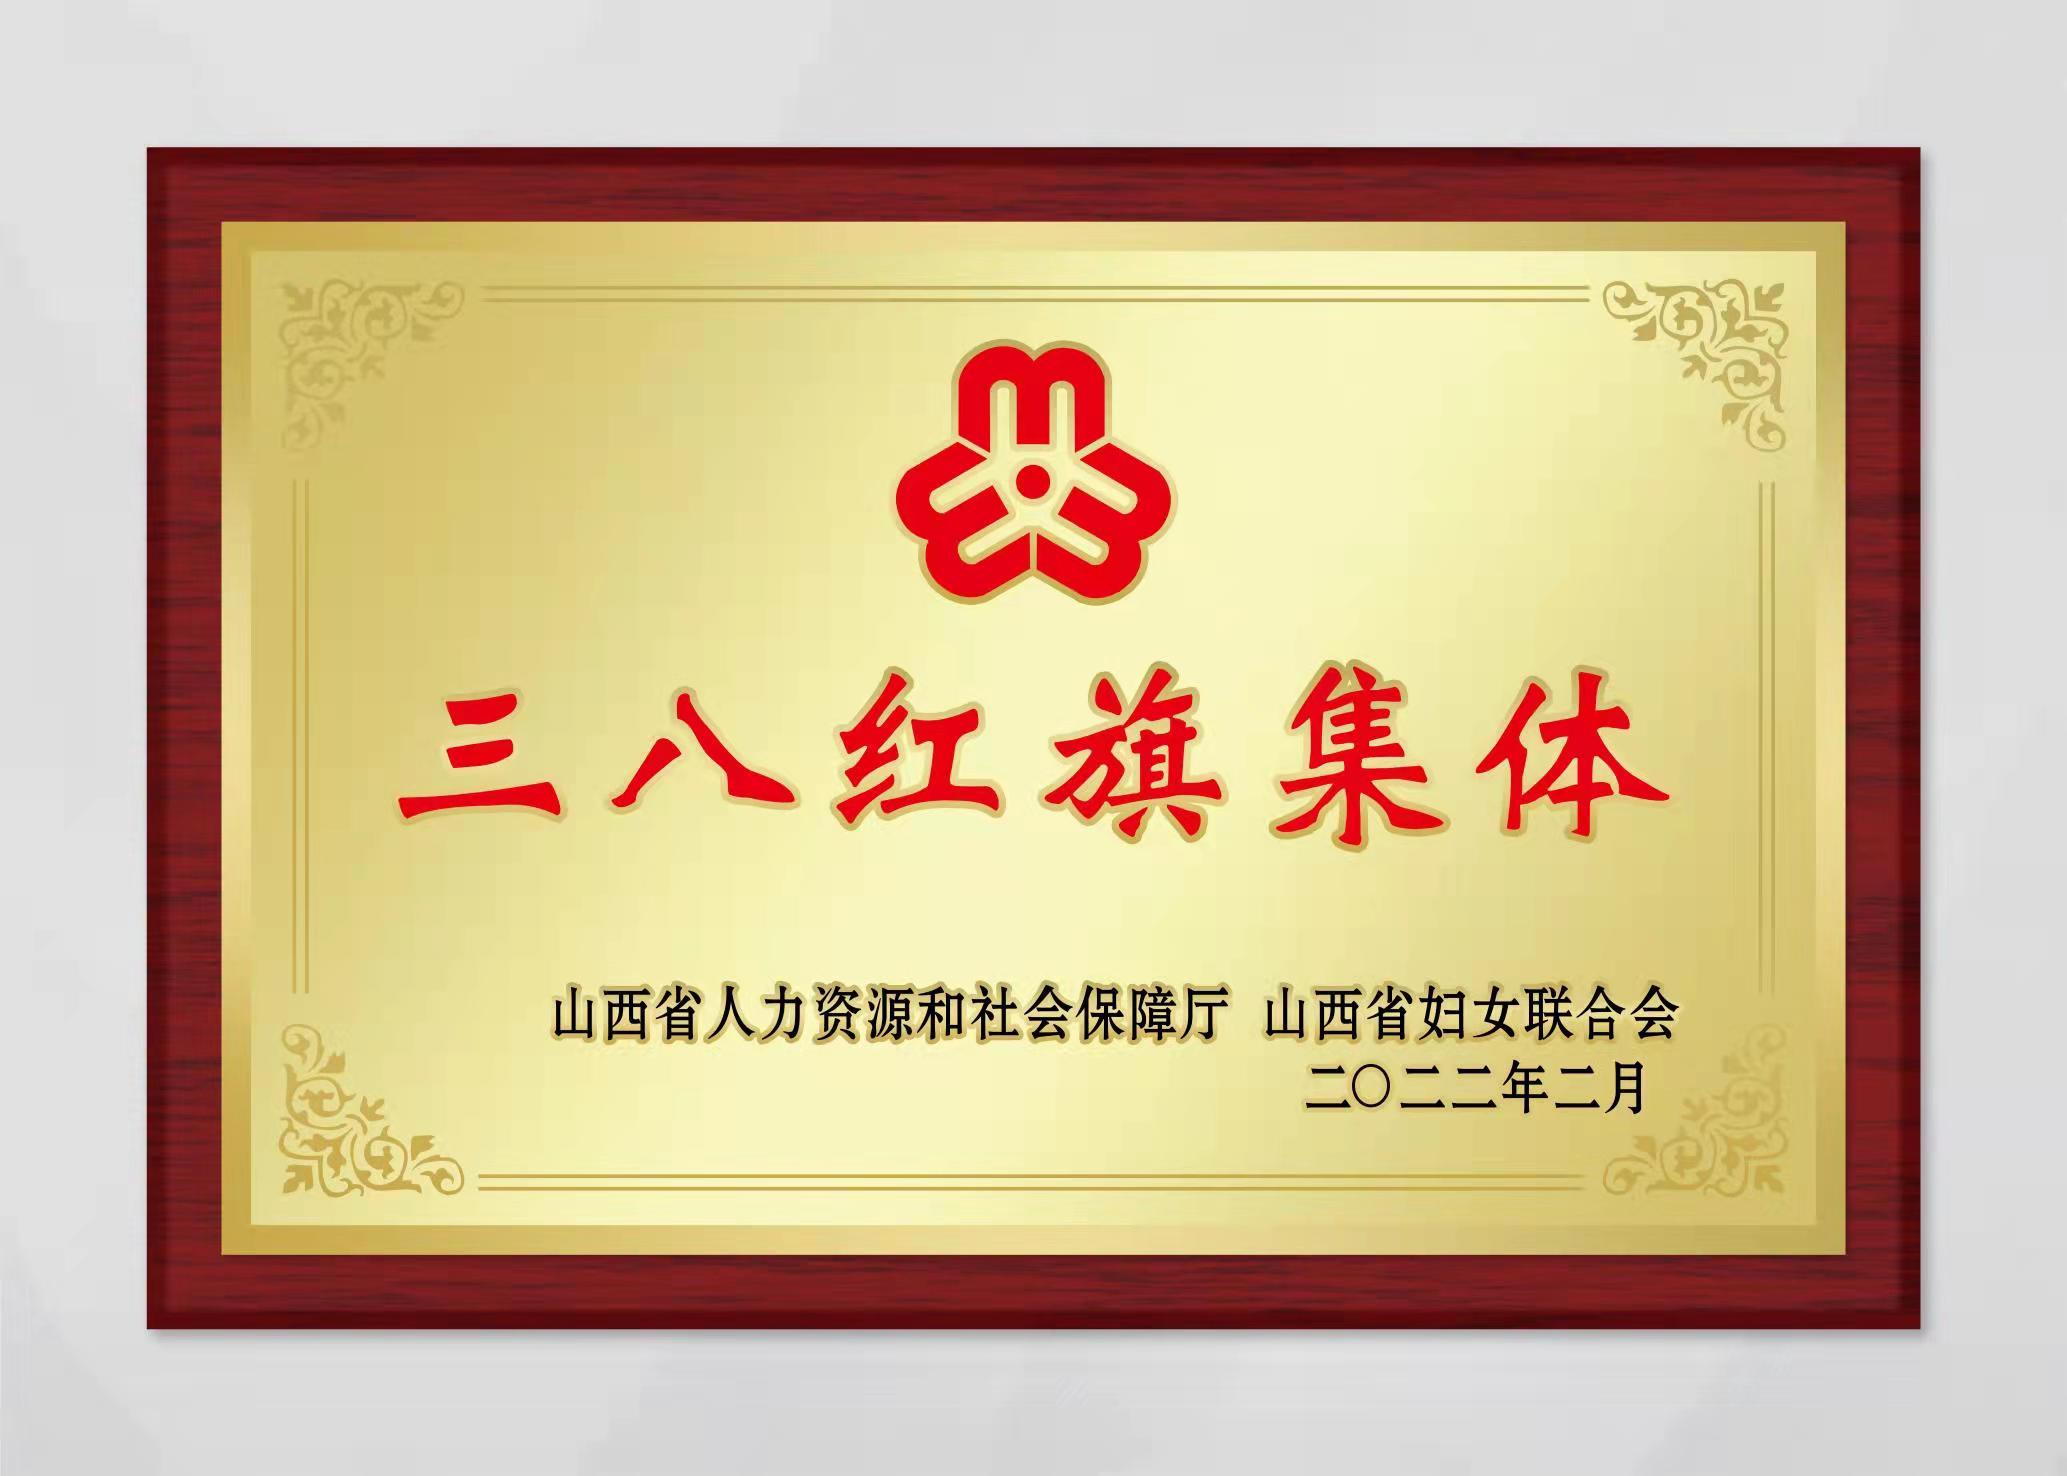 山西中科潞安紫外光電科技有限公司被評為山西省三八婦女先進集體。